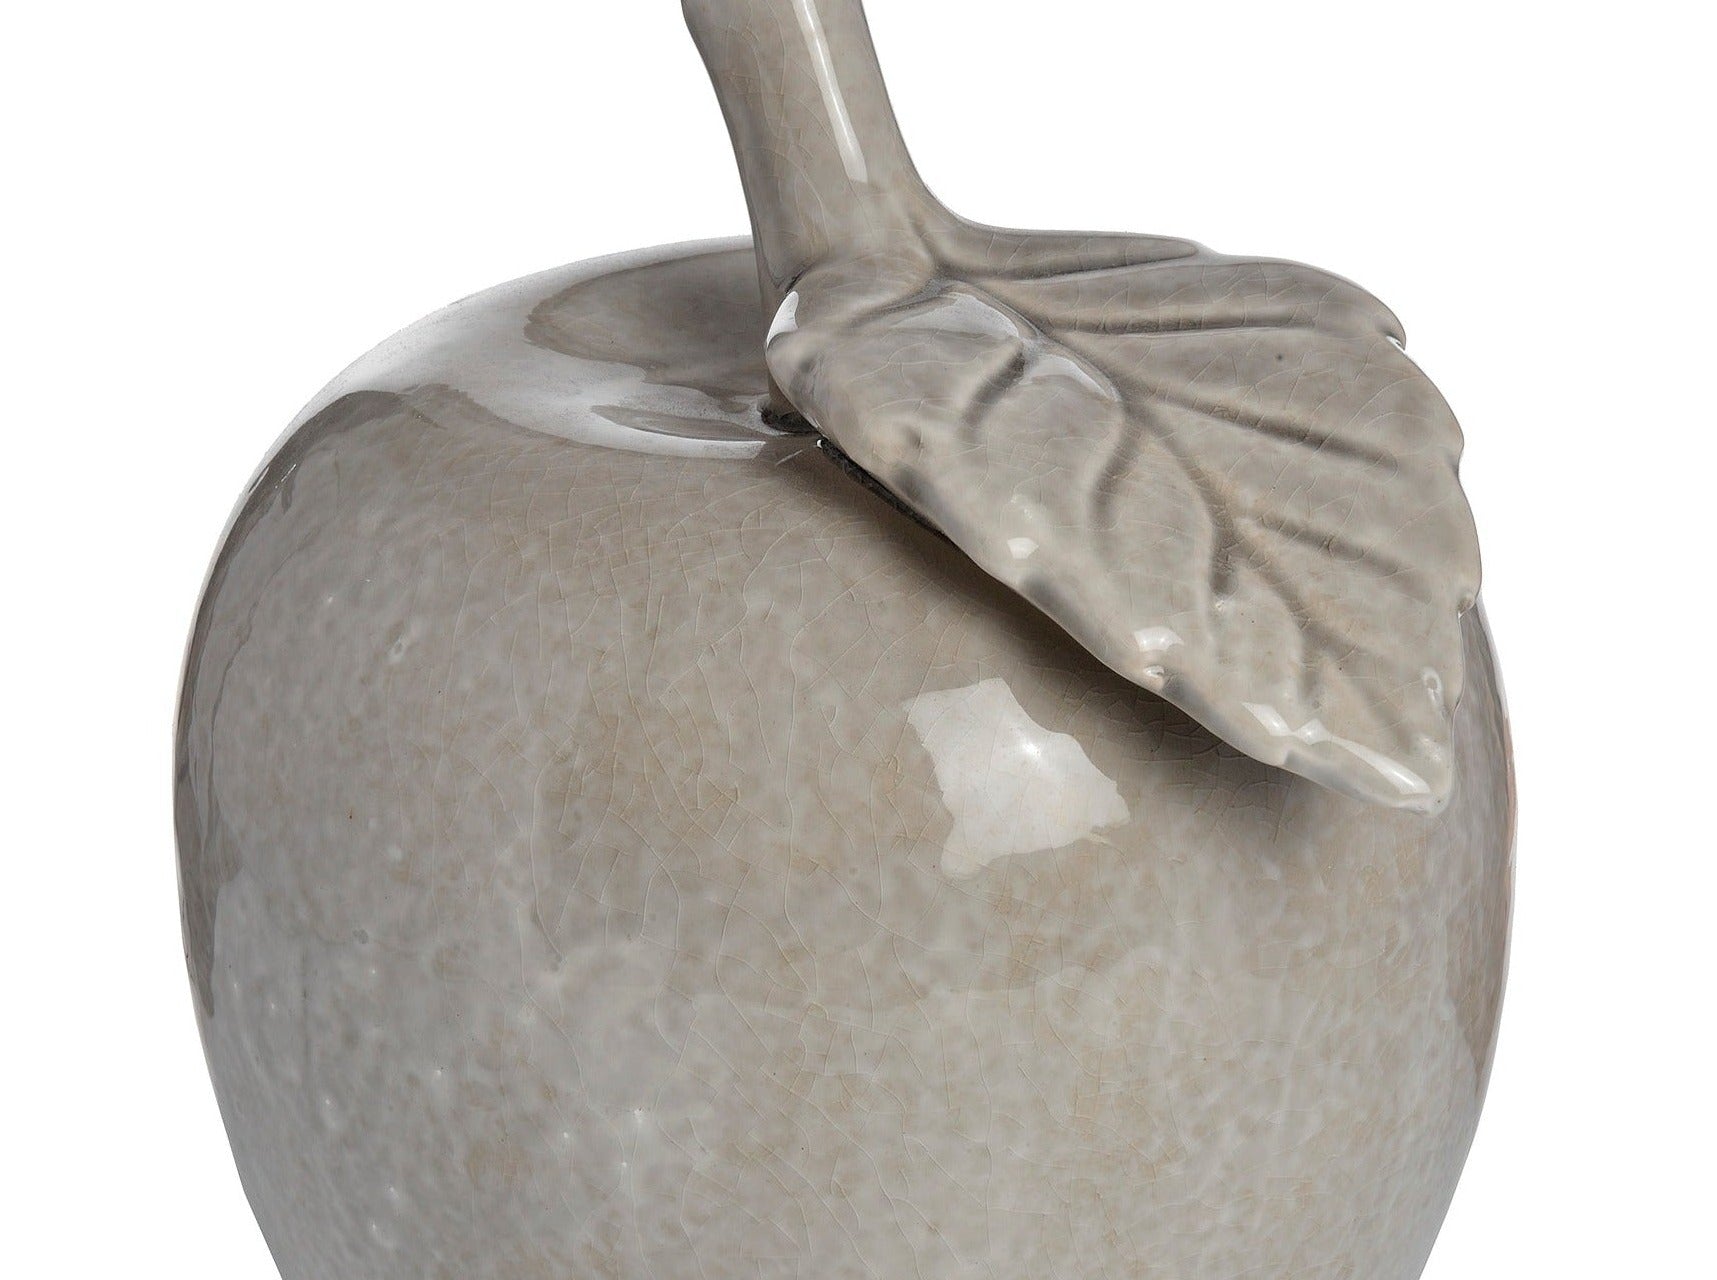 Antique Tan Large Ceramic Apple